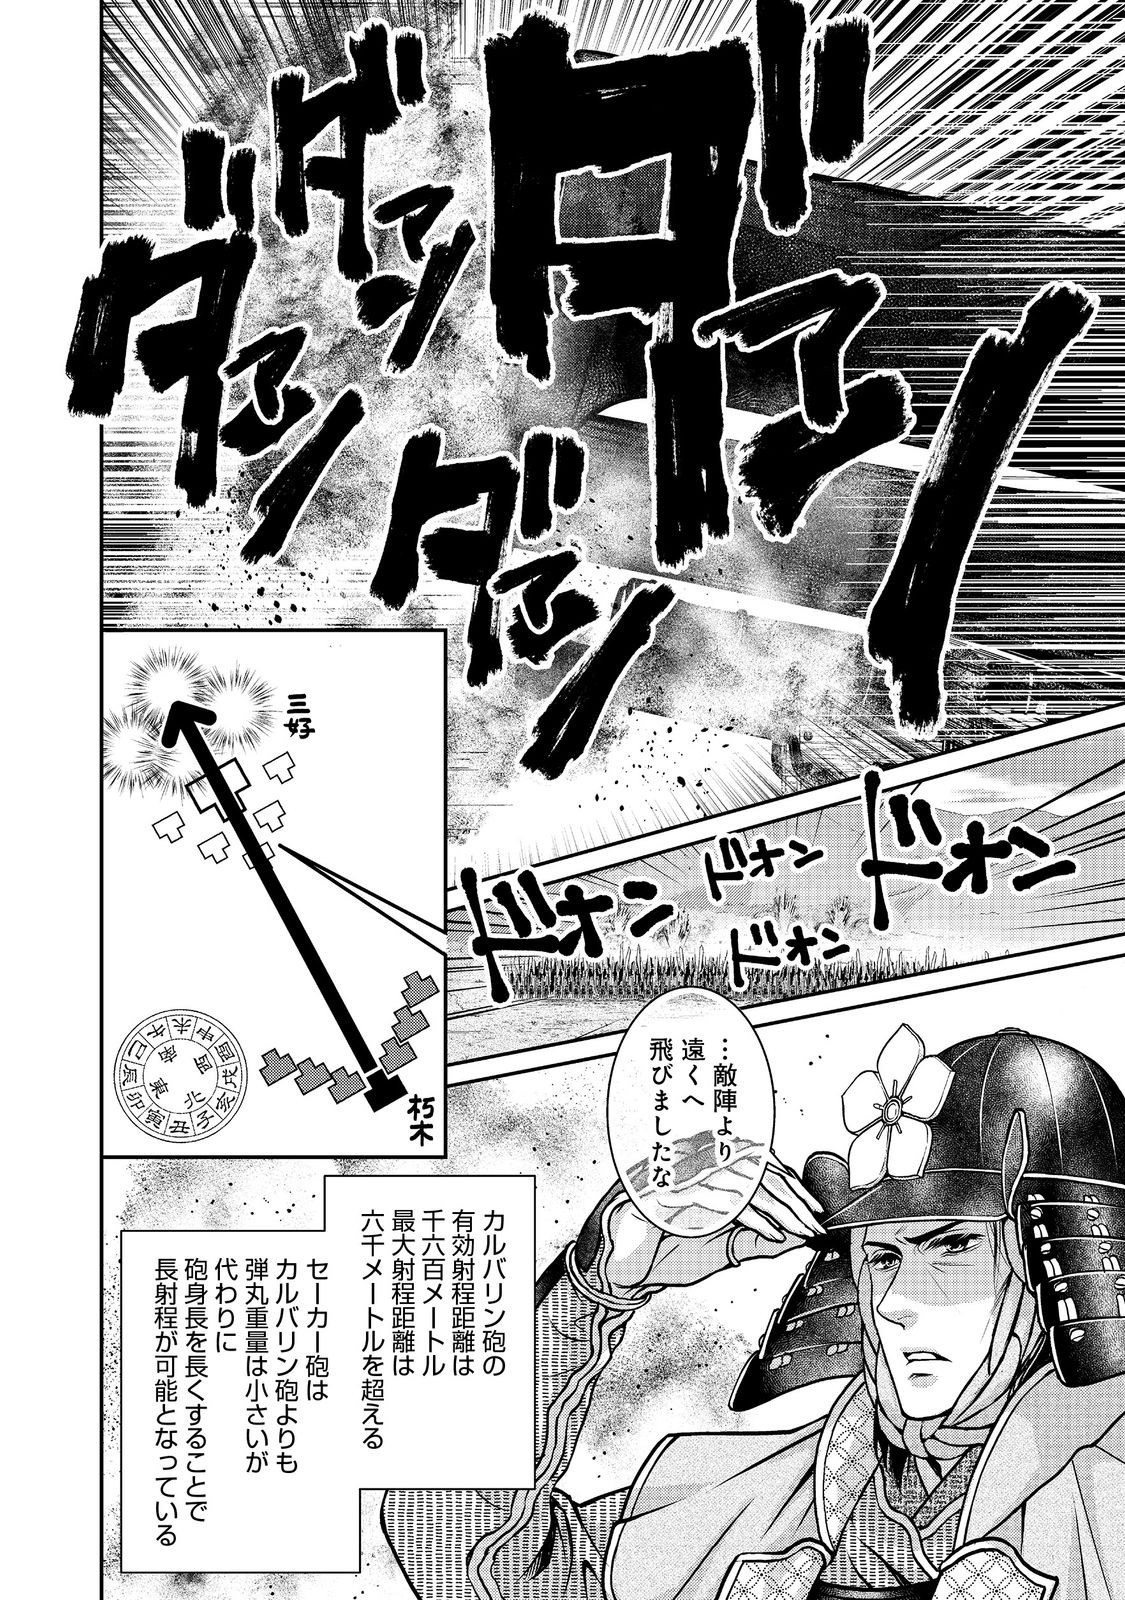 Afumi no Umi – Minamo ga Yureru Toki - Chapter 41 - Page 2